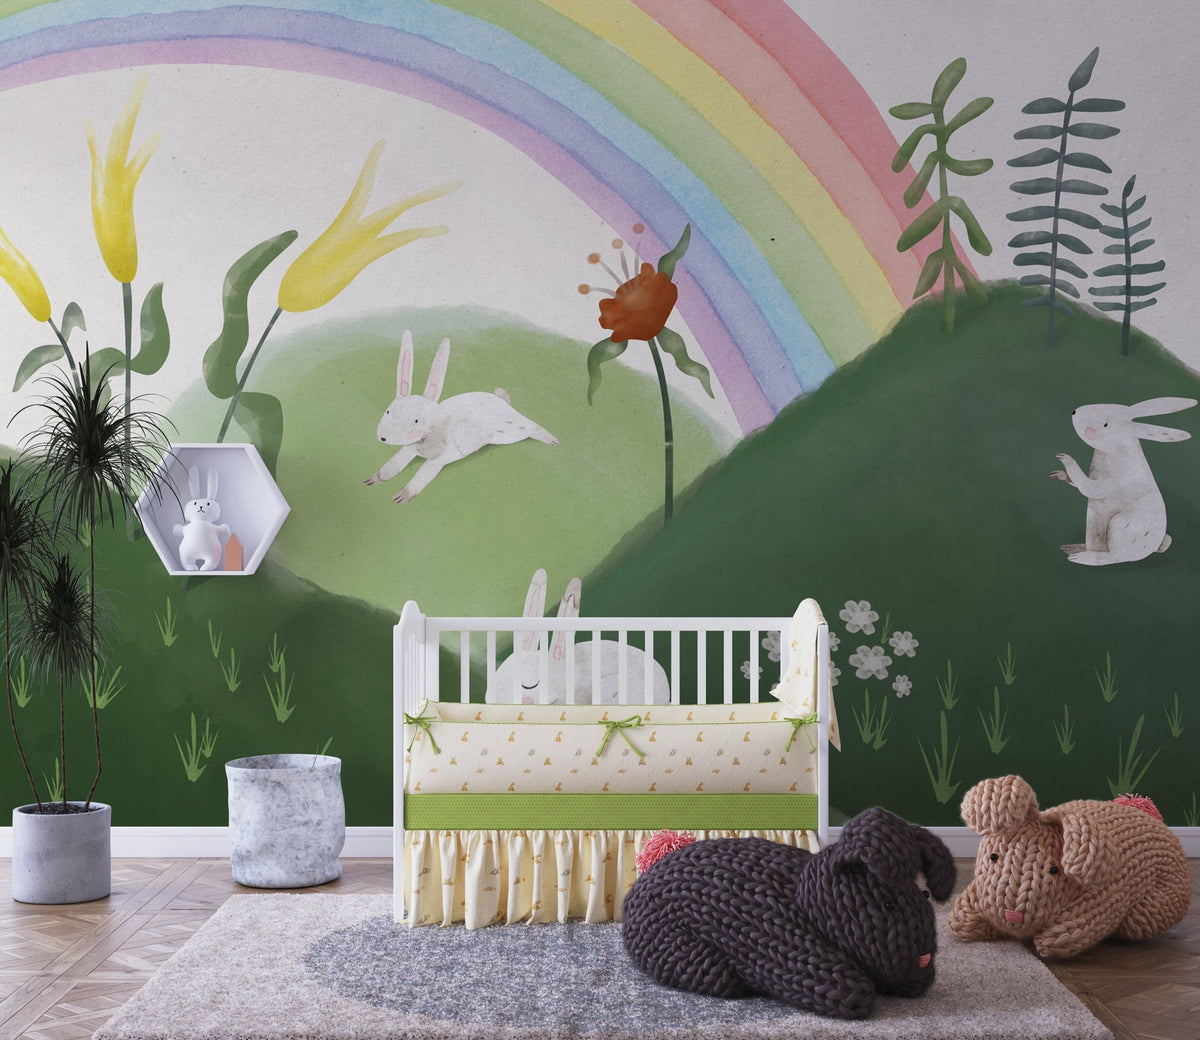 Rabbit in Garden - Kids Room Wallpaper Mural-ChandeliersDecor